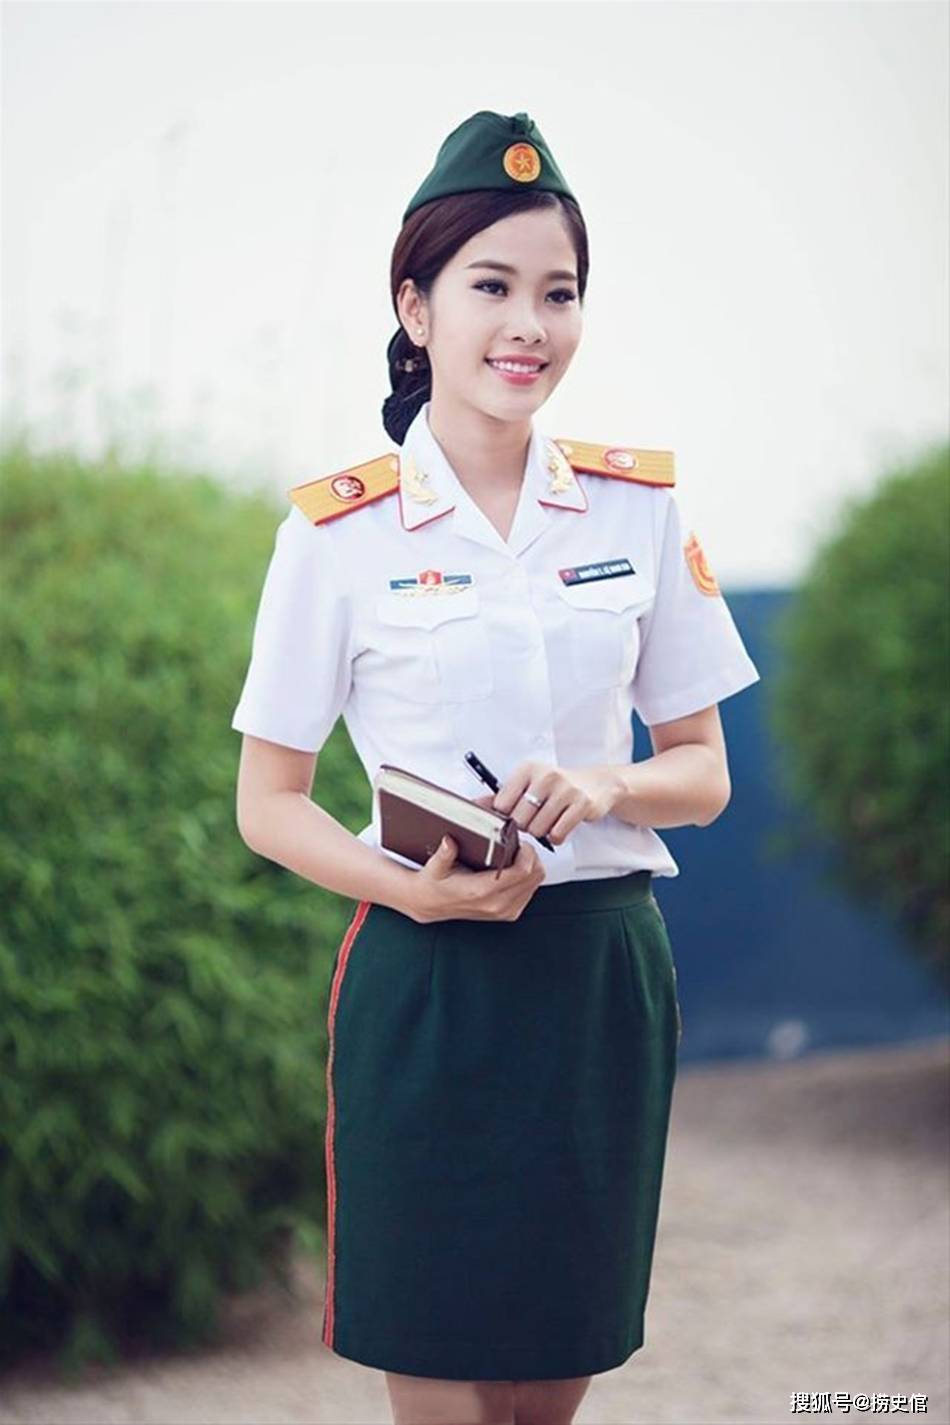 穿着新式军服越南女兵,个个青春靓丽